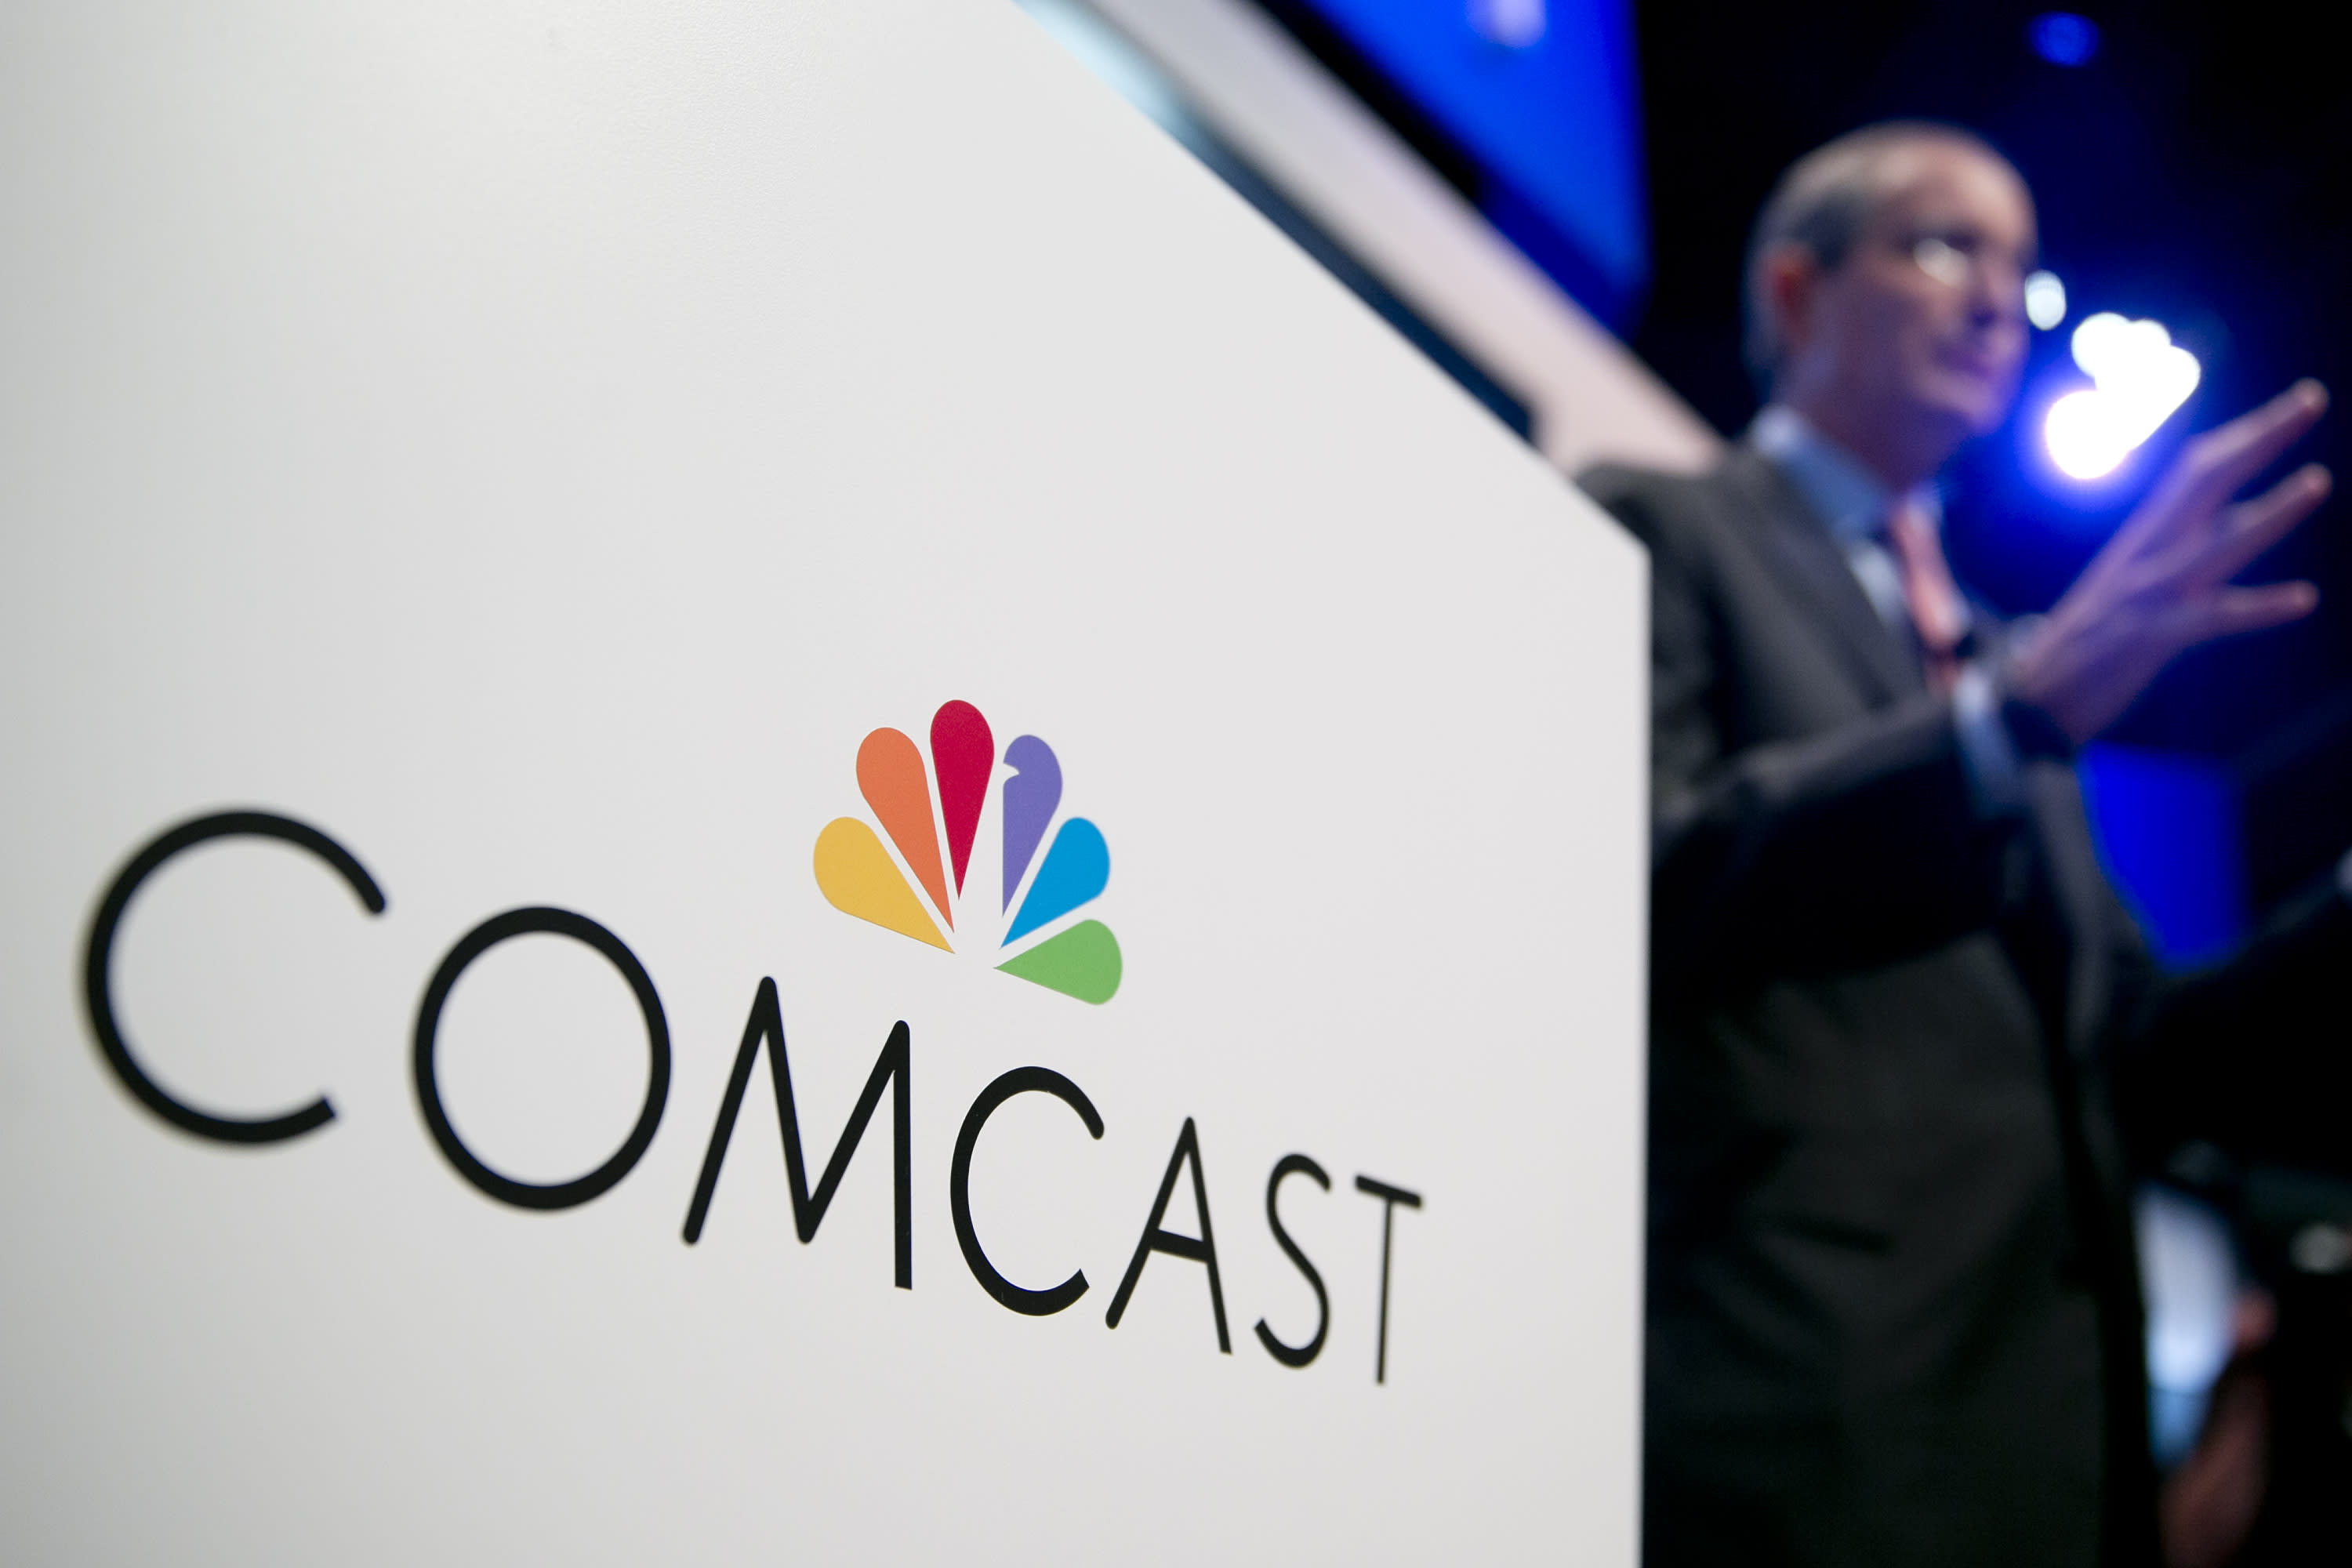 Comcast confirms plan for all-cash bid for Fox